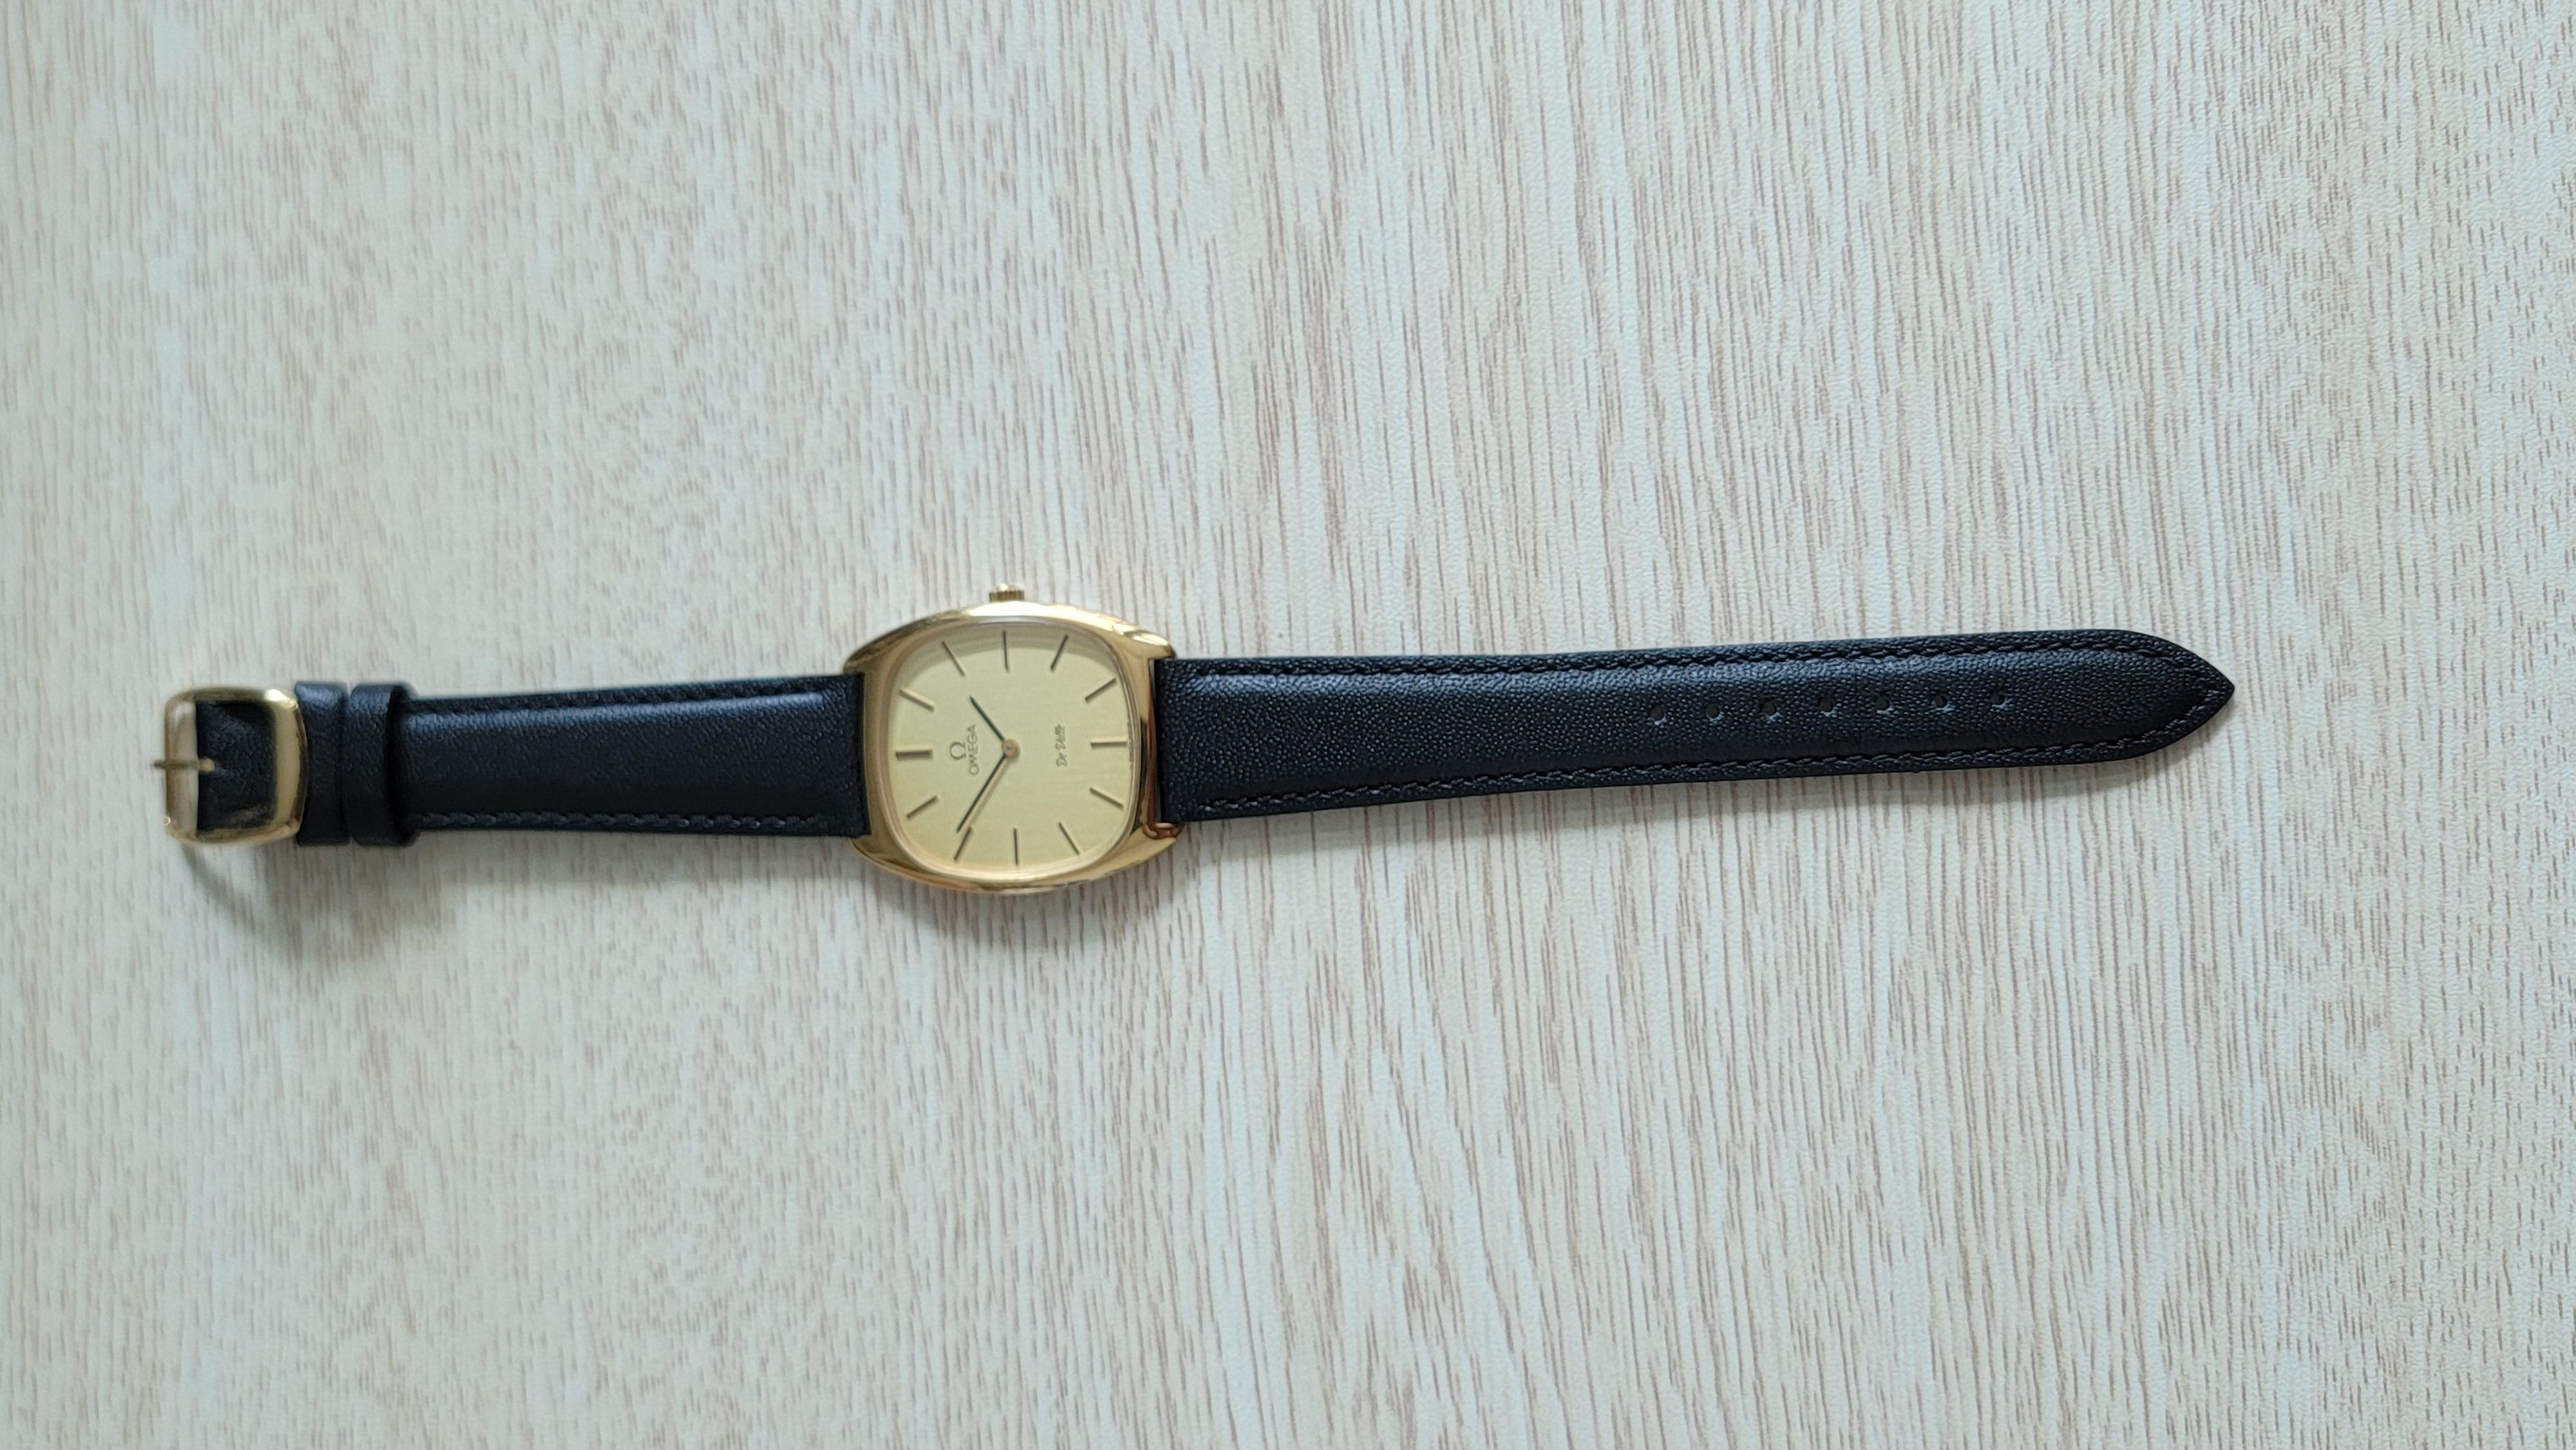 Antike Vintage Watch Omega De Ville Uhr (CIRCA 1977)
1 japanischer Vorbesitzer - gekauft in Tokio
Uhrwerk: 1110139 Automatik
Modell von: 1977
Omega 625 n40943444 
32 x 38 mm Lug to Lug. 
Stahl und vergoldete Lünette, Handaufzug. 
Ausgezeichneter